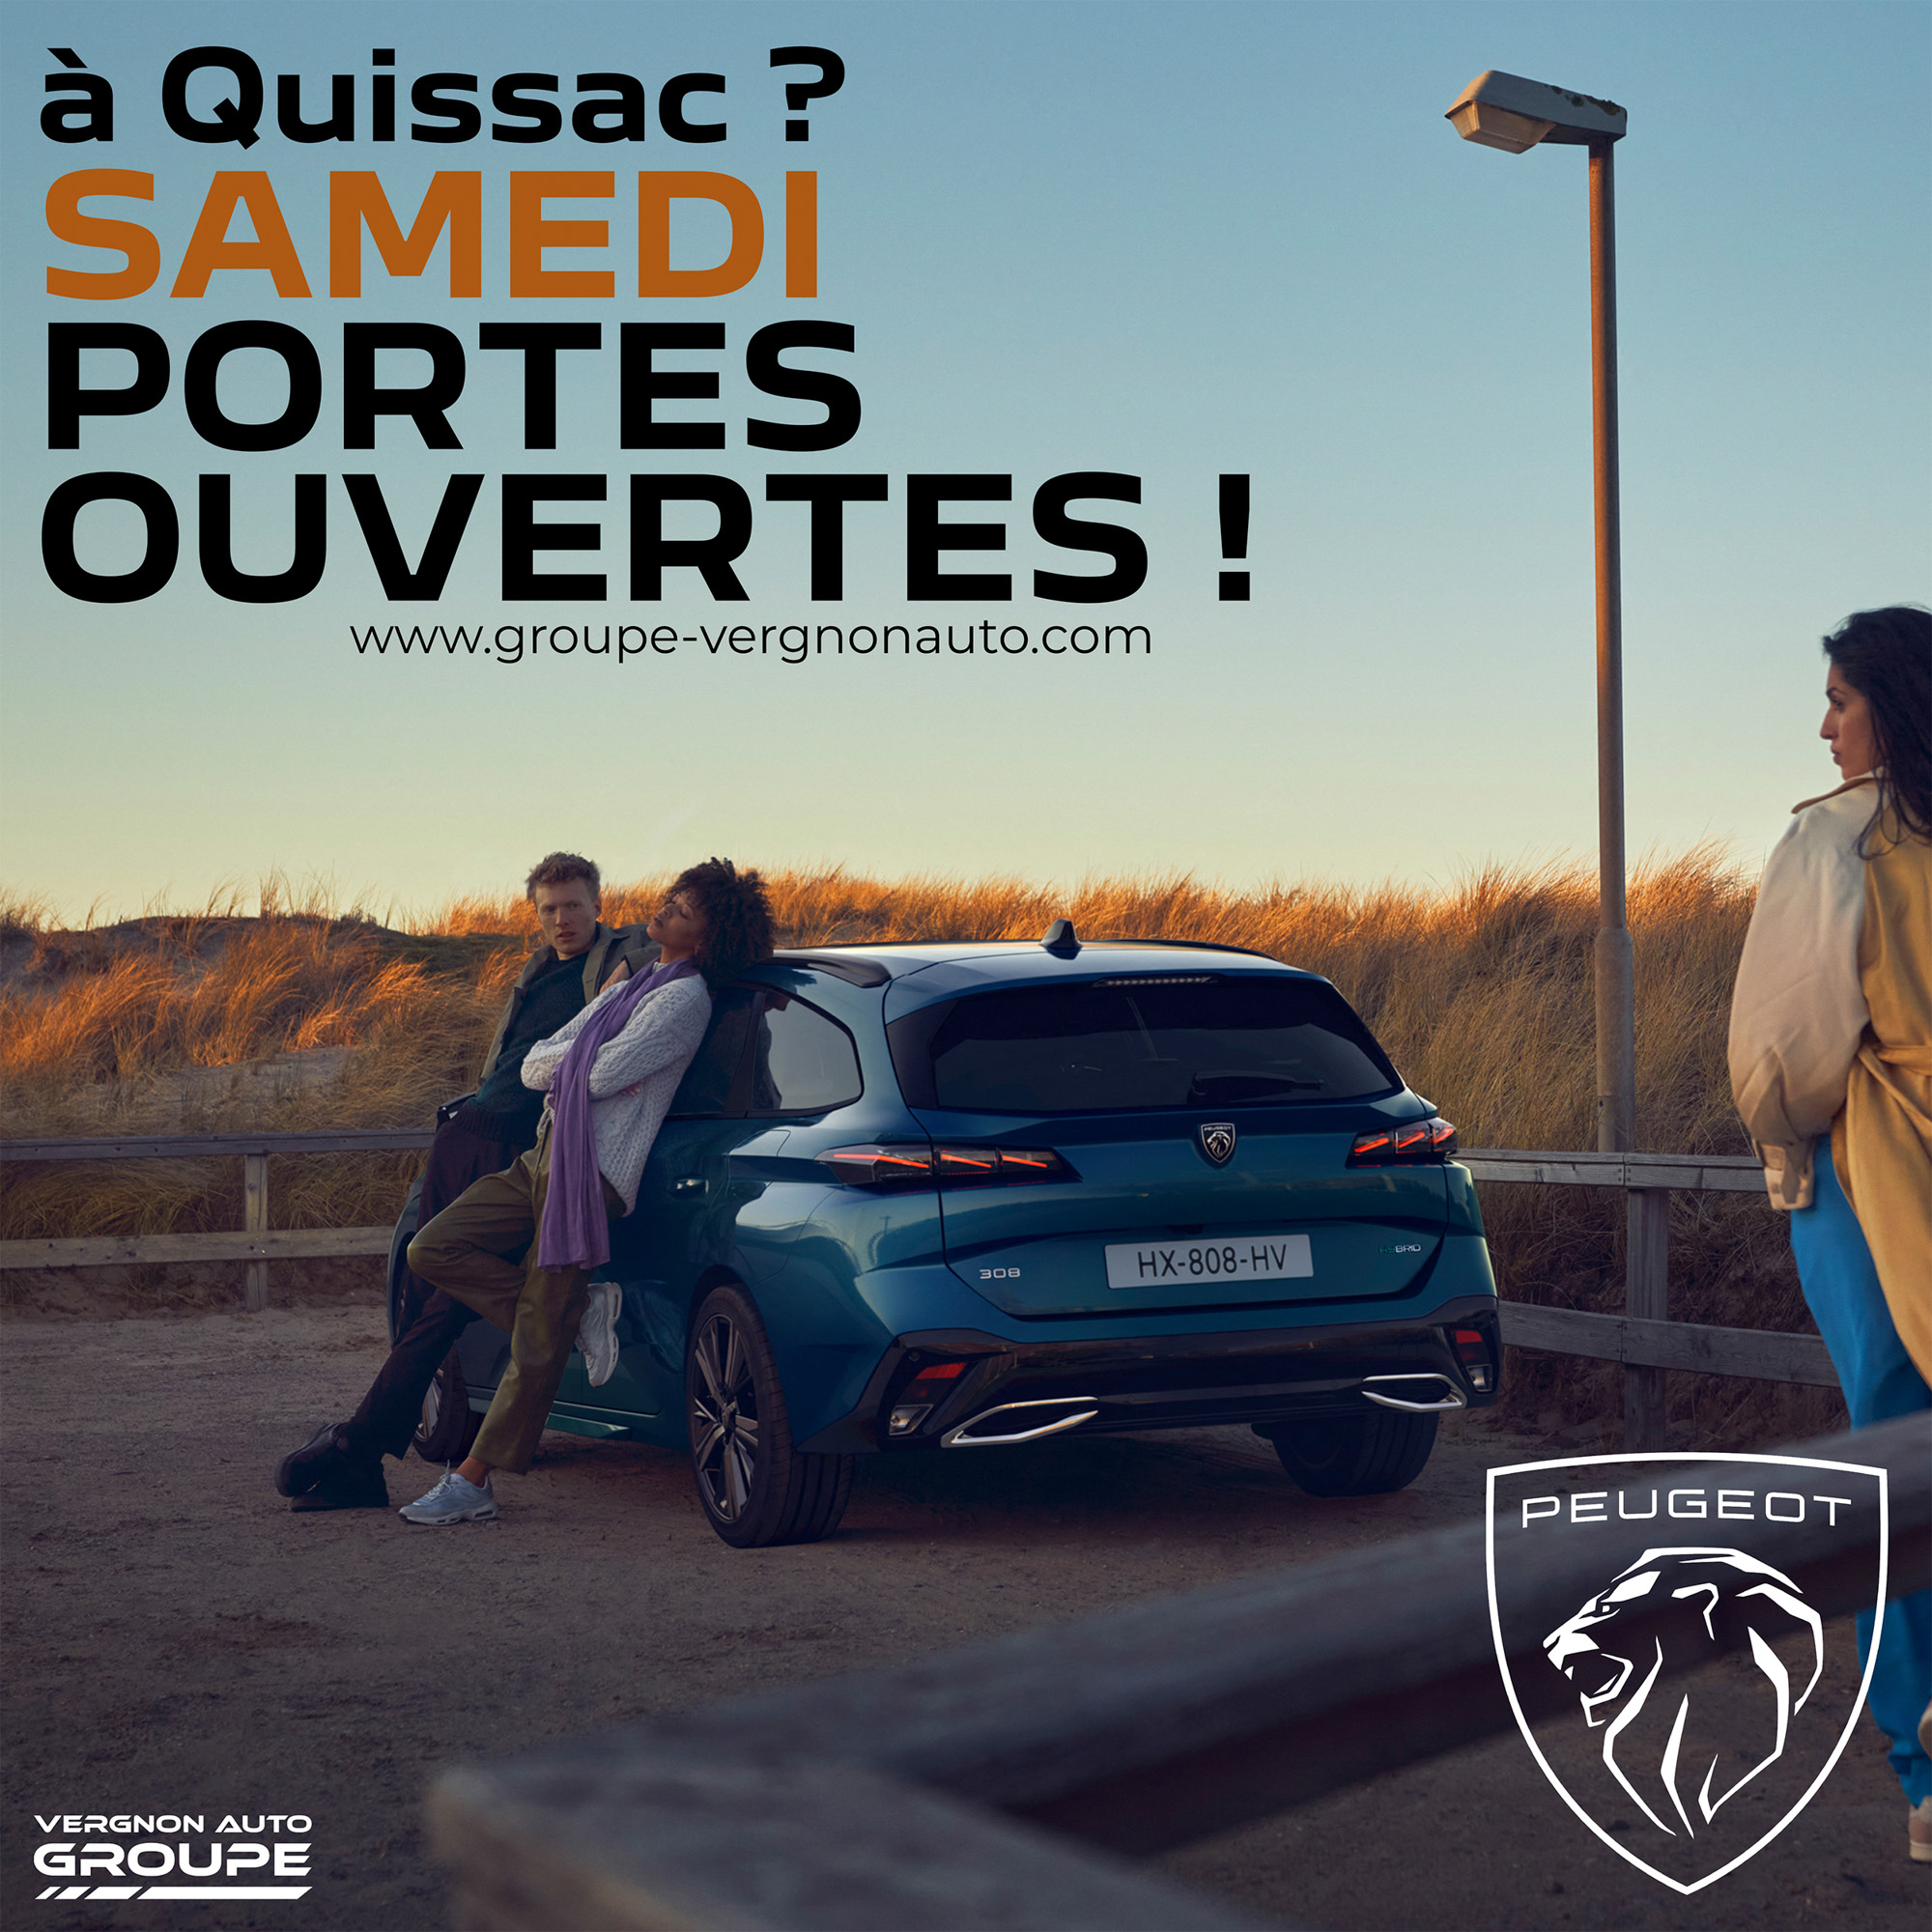 Samedi 16 octobre 2021, c'est portes ouvertes Peugeot à Quissac, dans le Gard